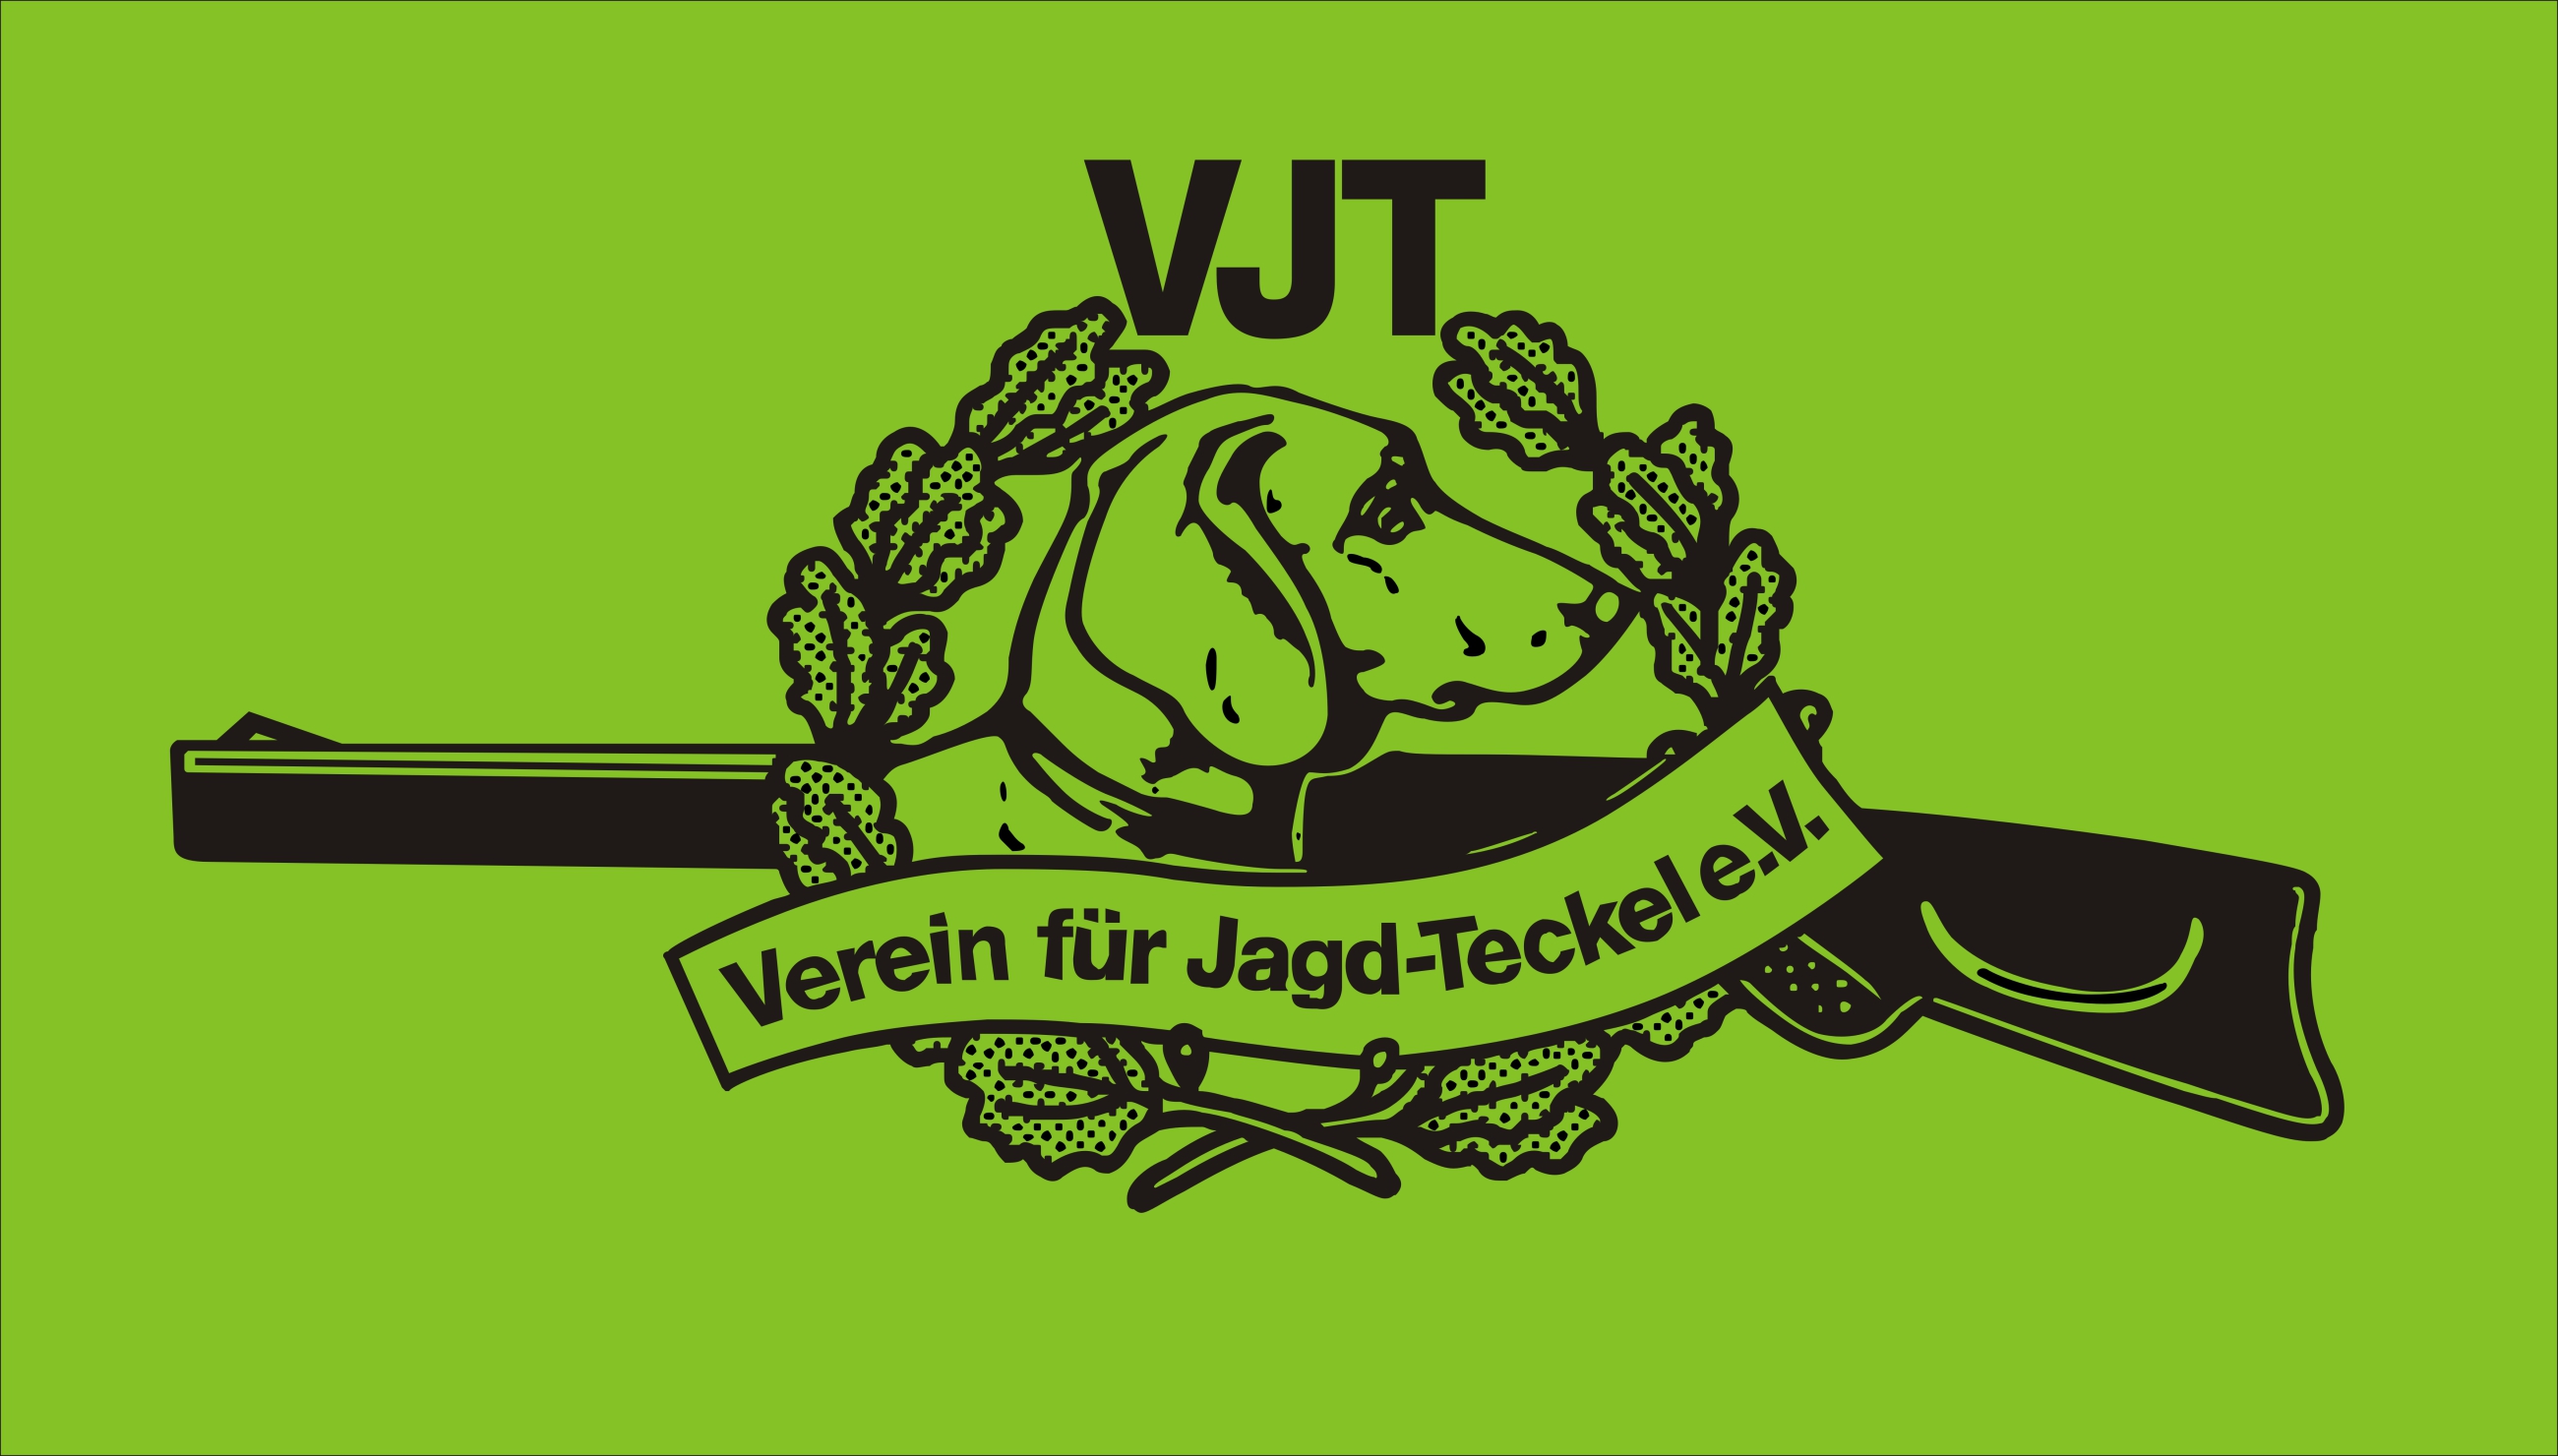 (c) Jagdteckelverein.de